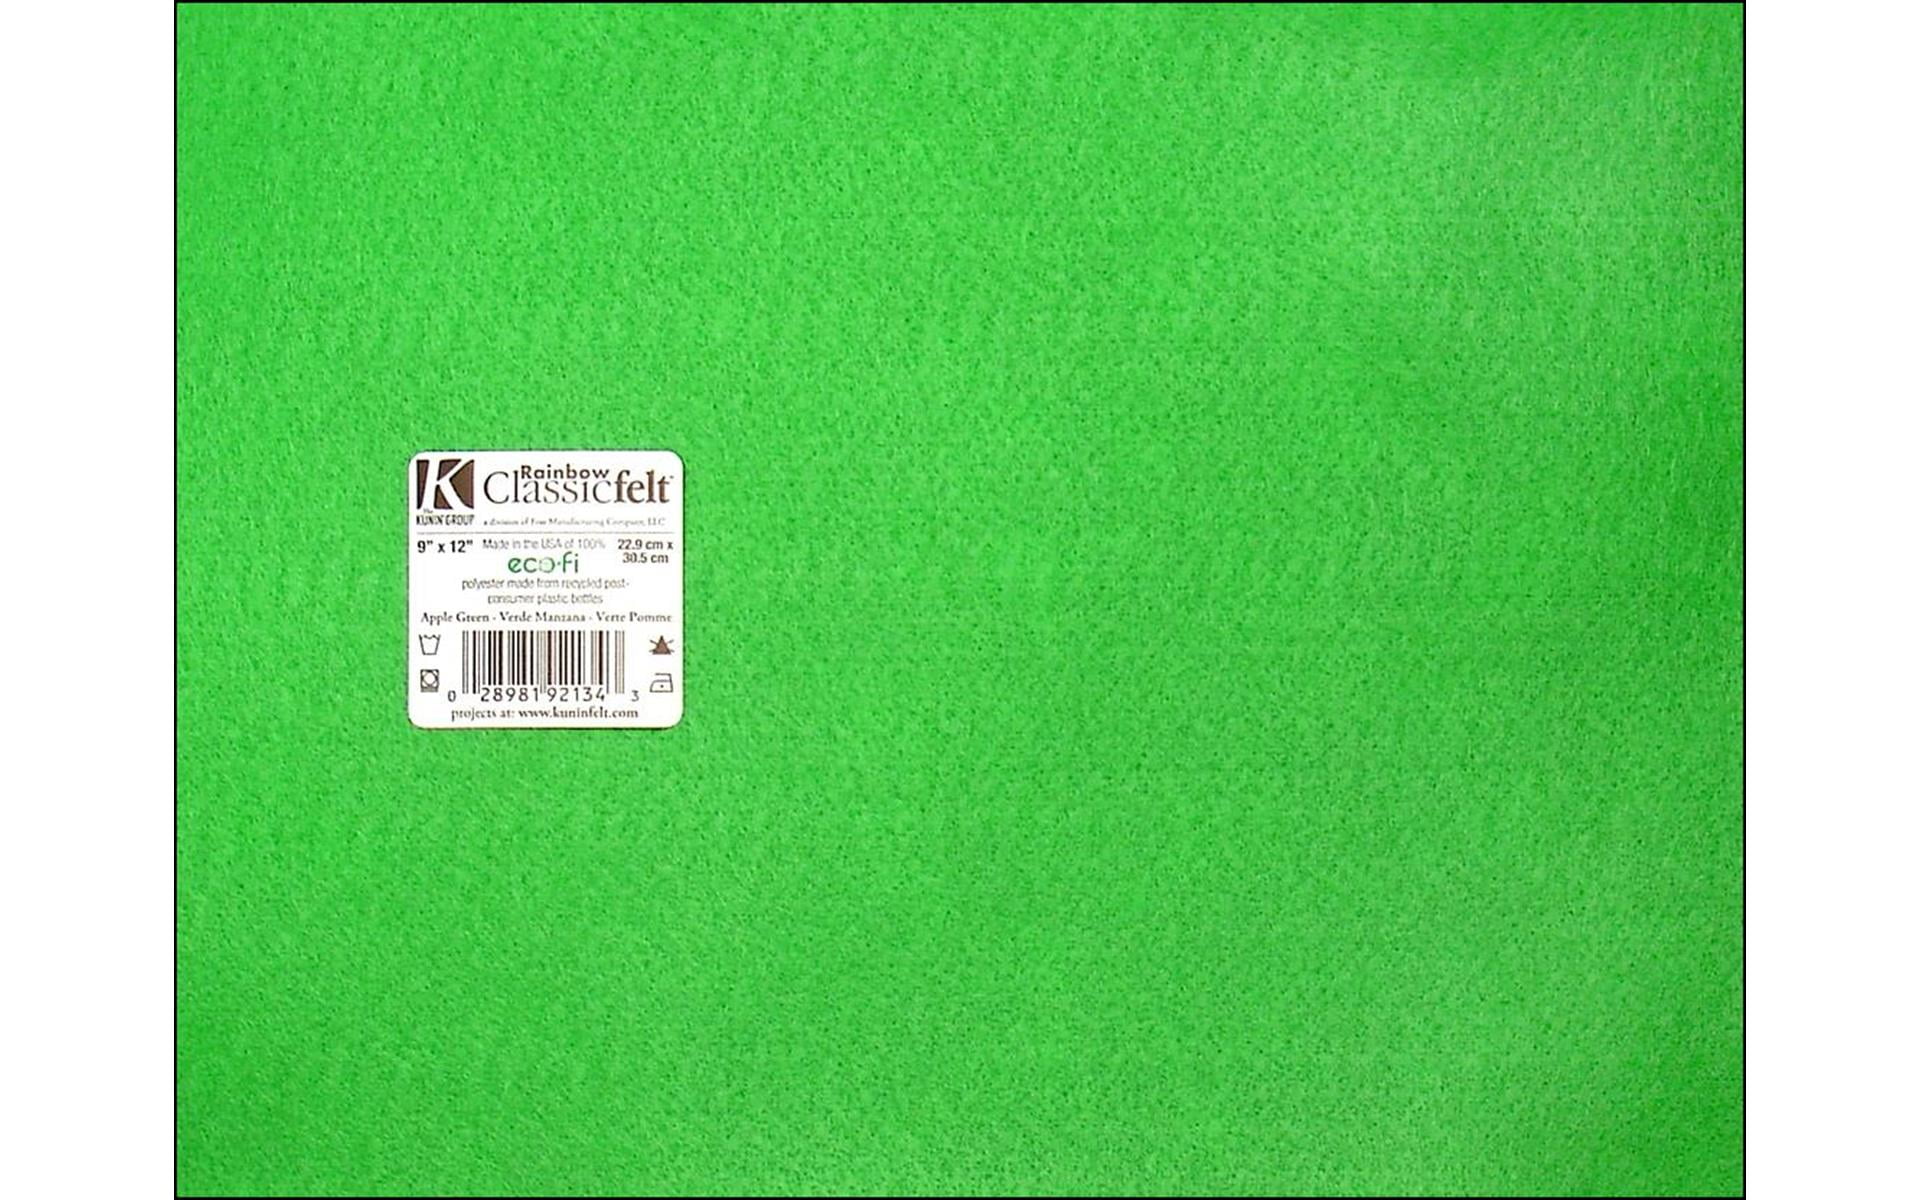 arkCRAFT Forest Green Felt Sheets, A4 Size, 5 Per Pack